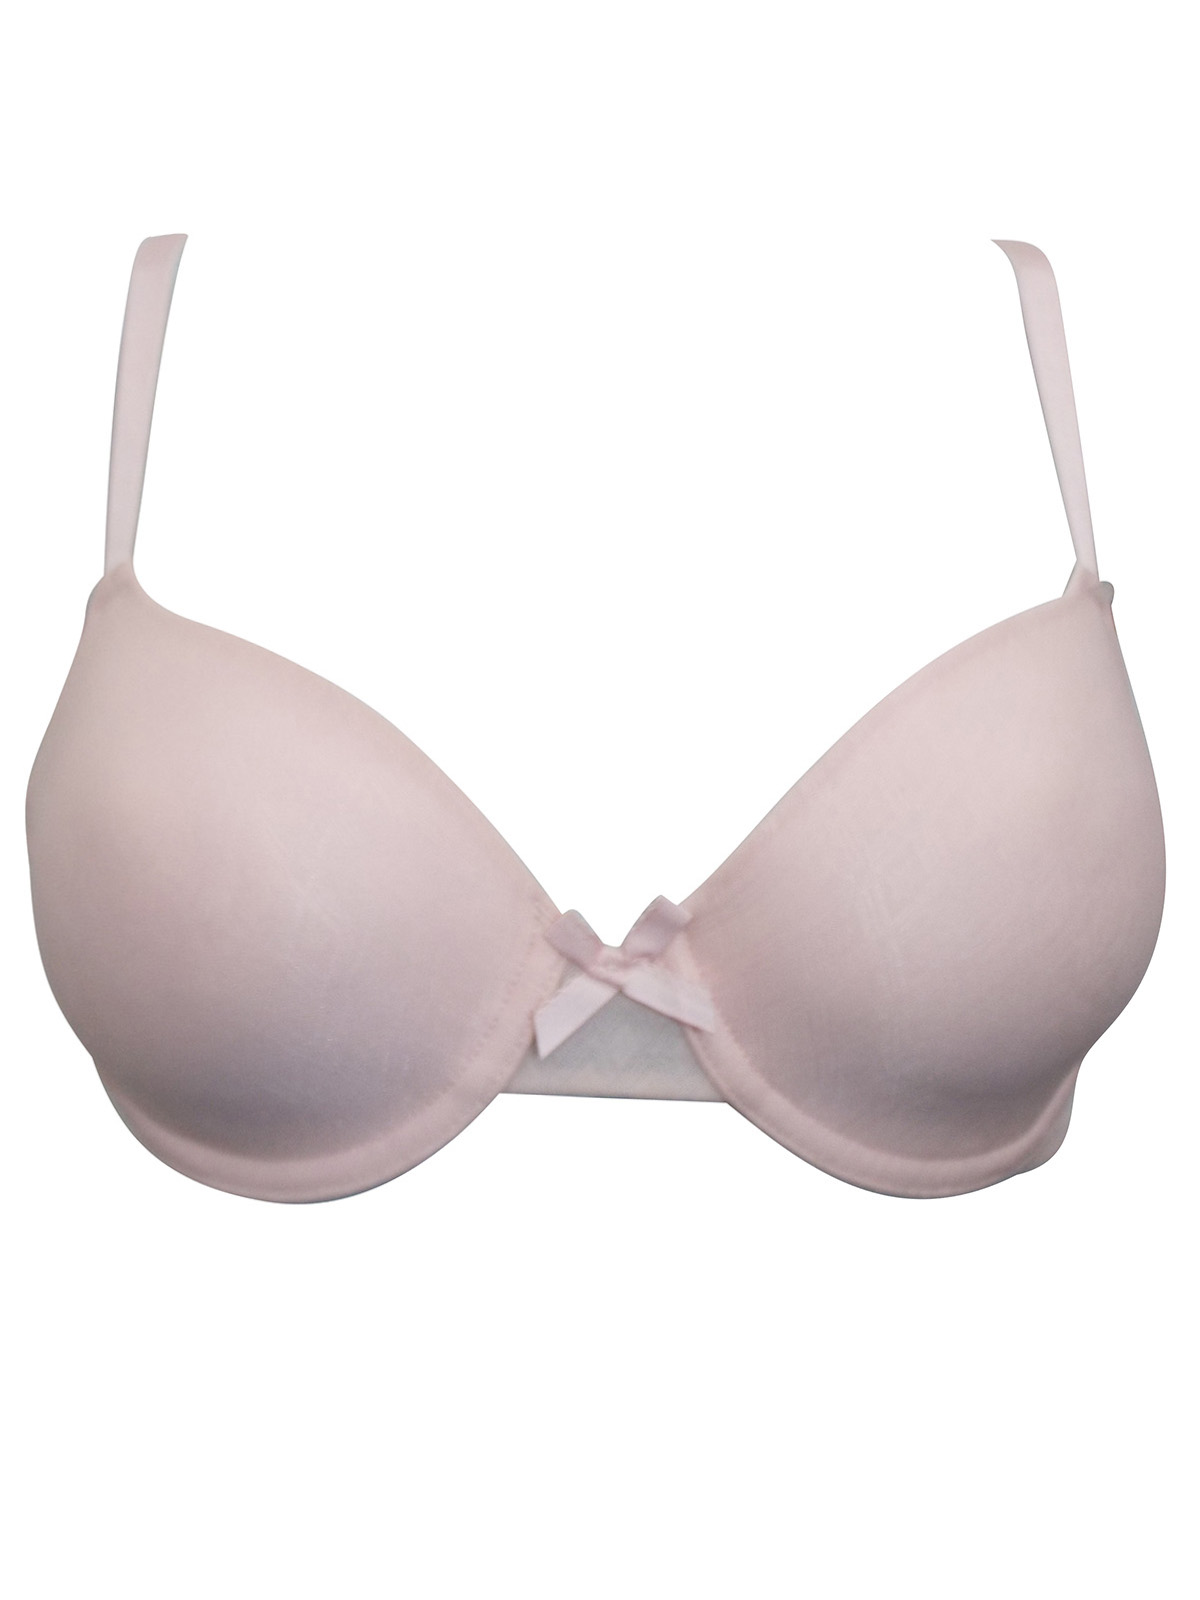 Ellen Tracy RN 17363 Pink Underwire Bra Size 34 C (10)